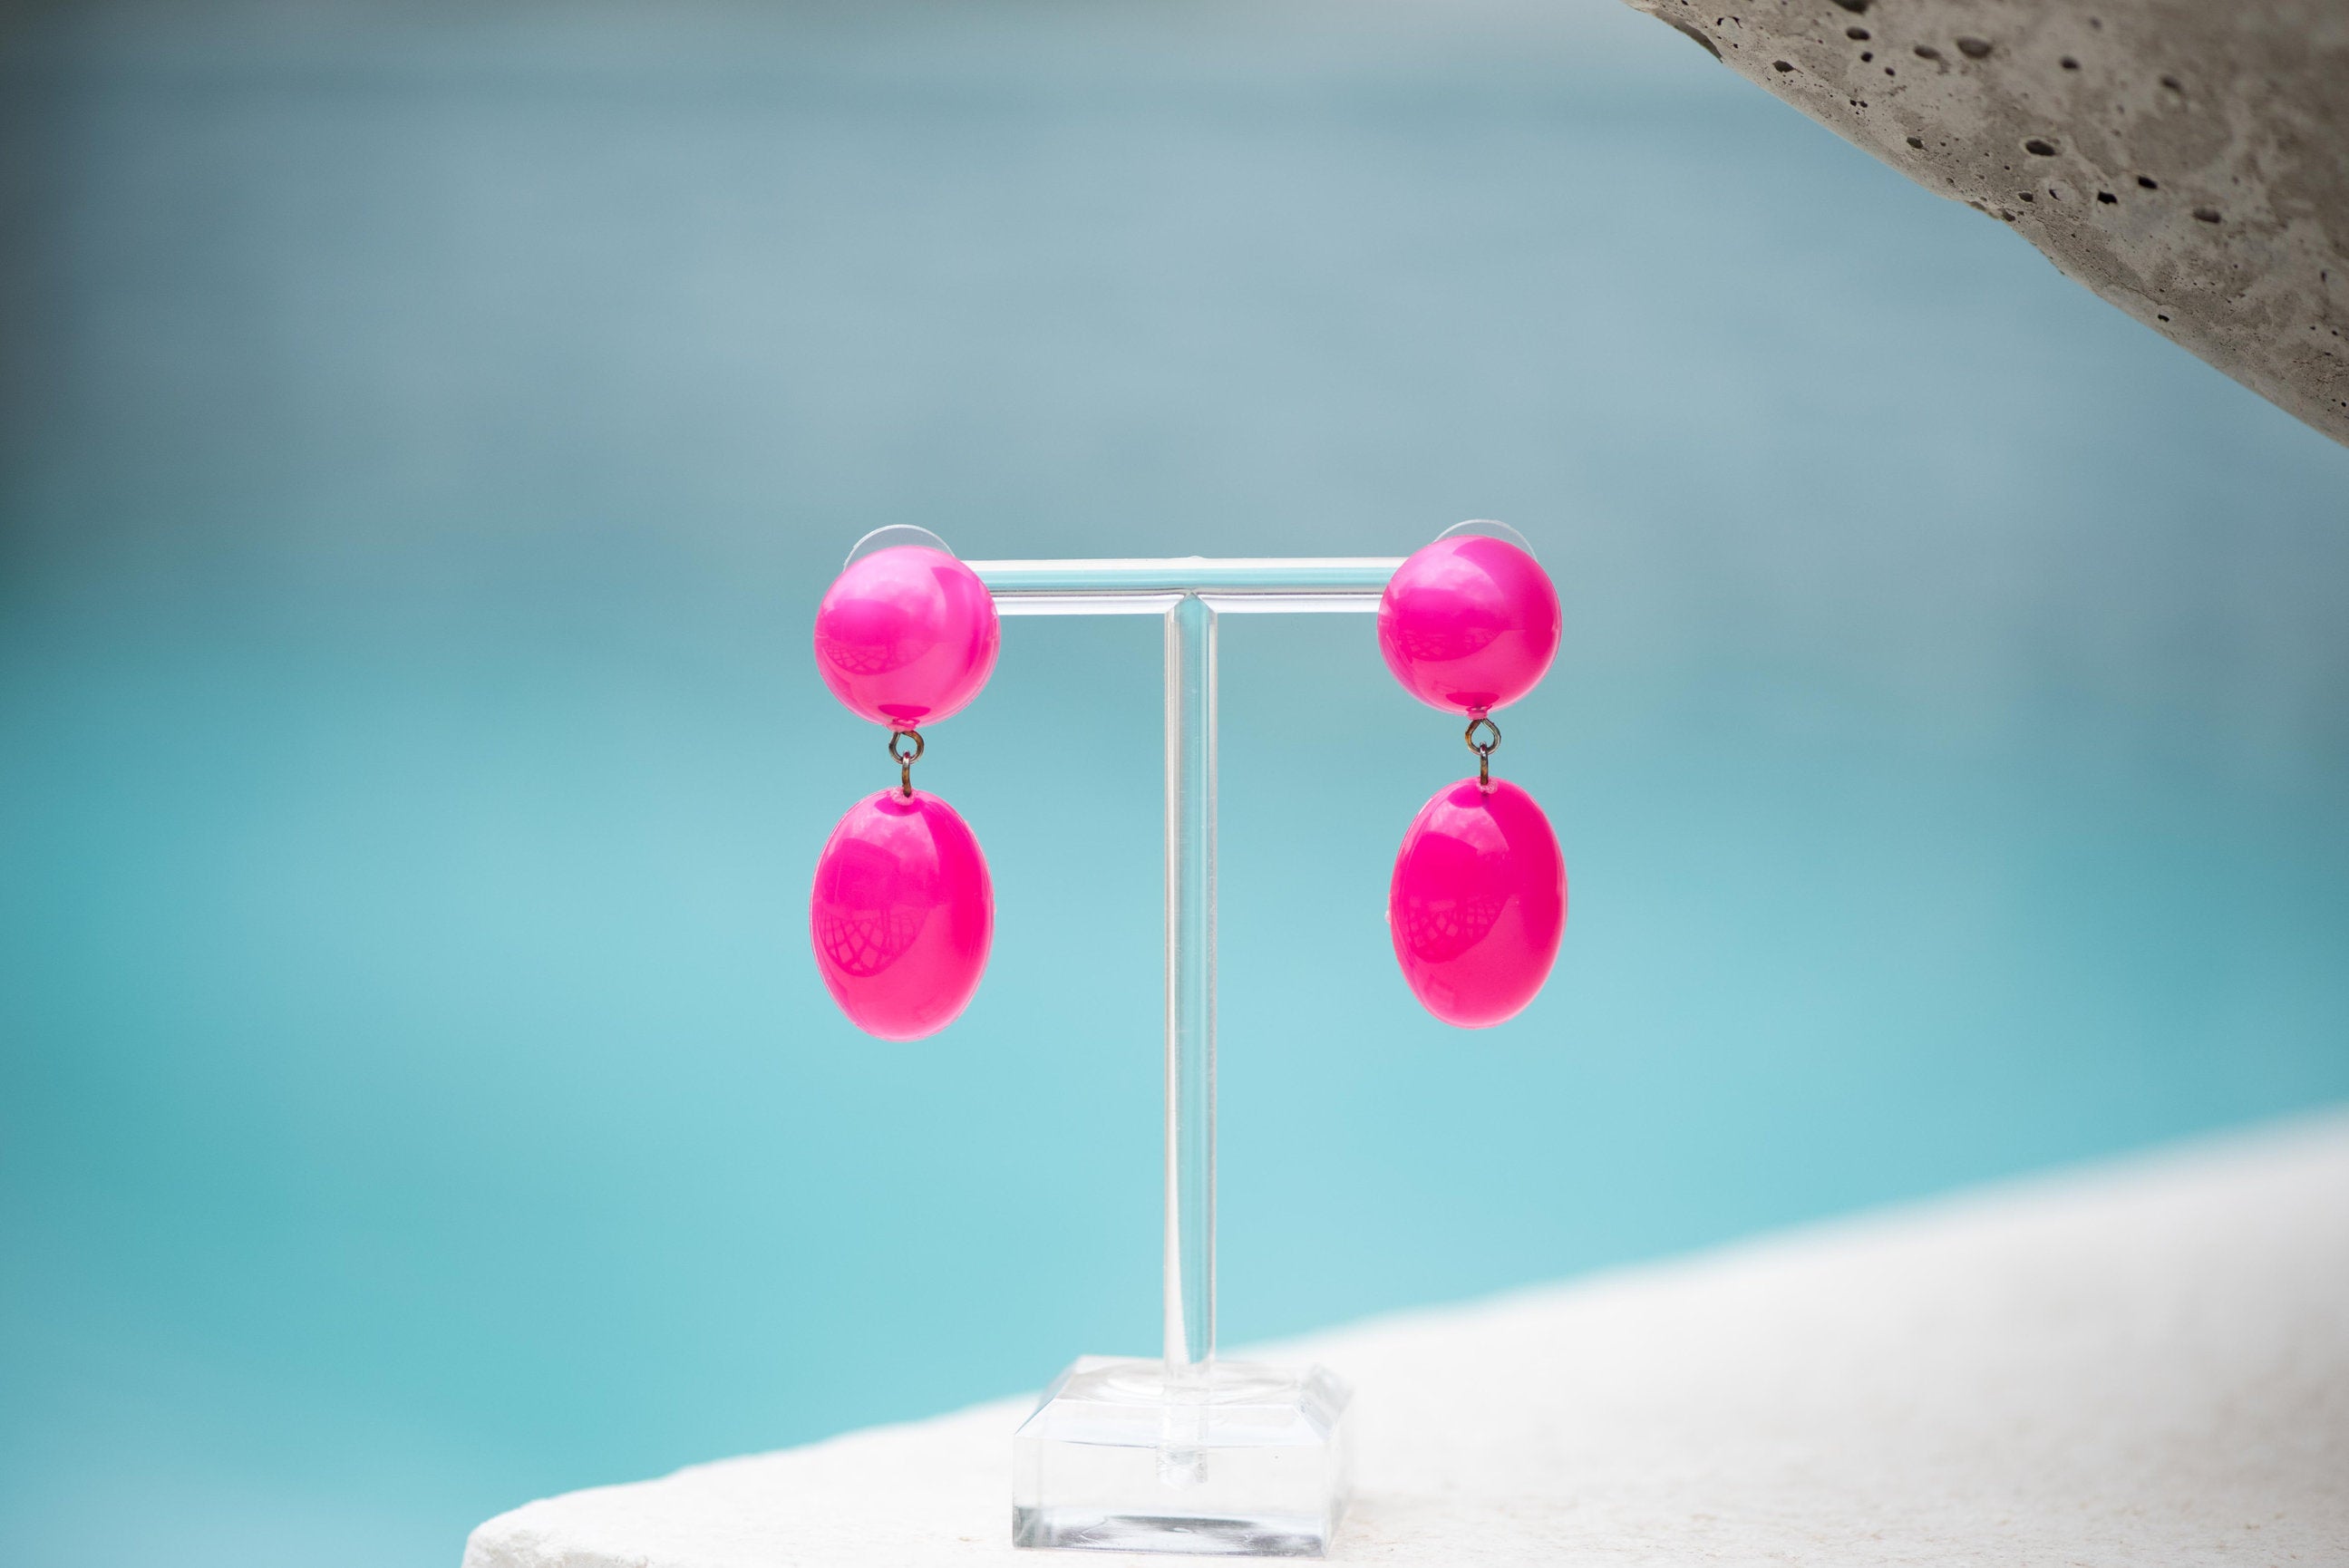 Hot Pink Aura Glow Jelly Bean Earrings